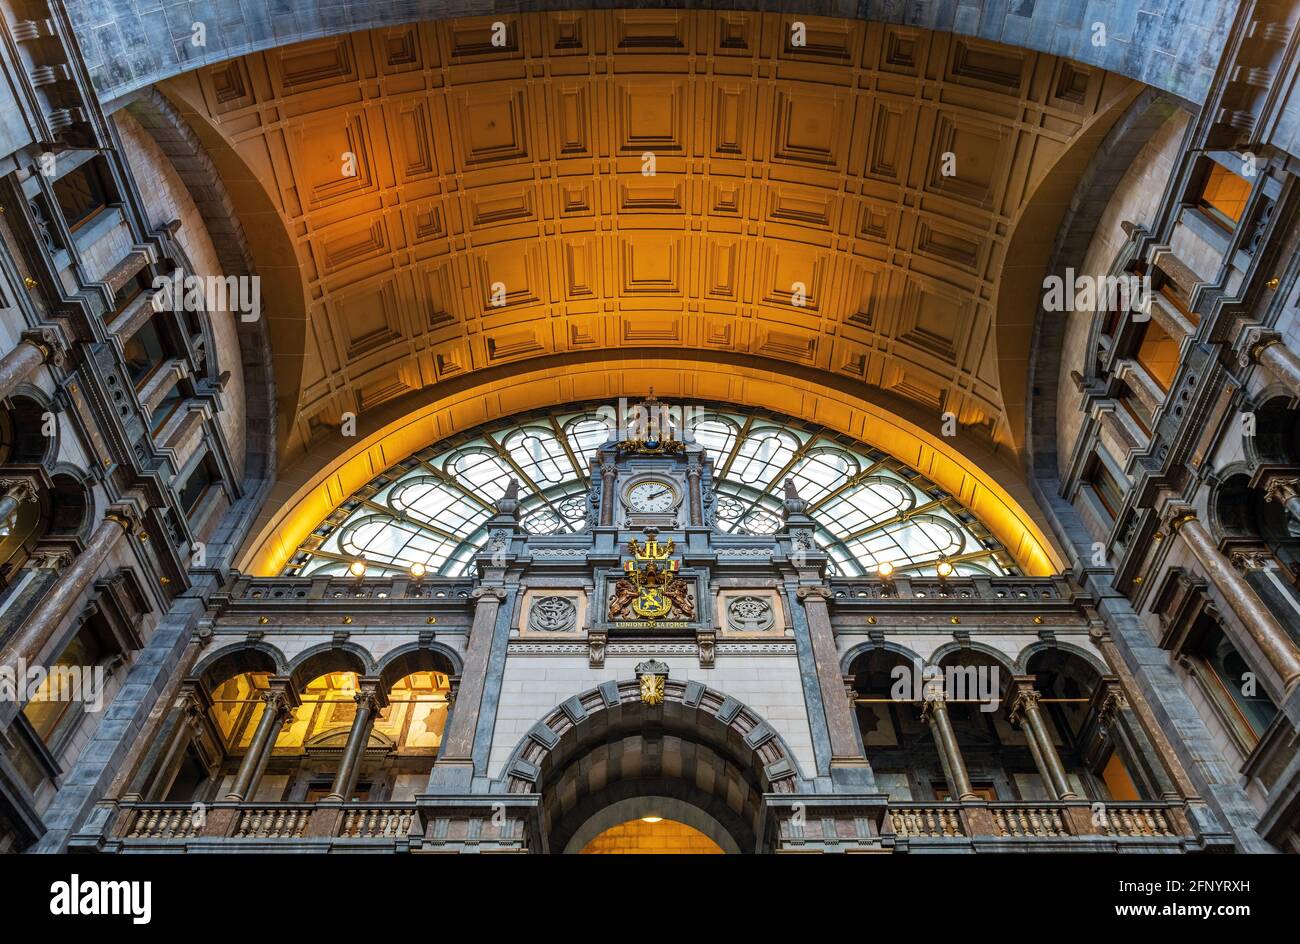 Antwerp central train railway station architecture interior, Antwerpen, Belgium. Stock Photo